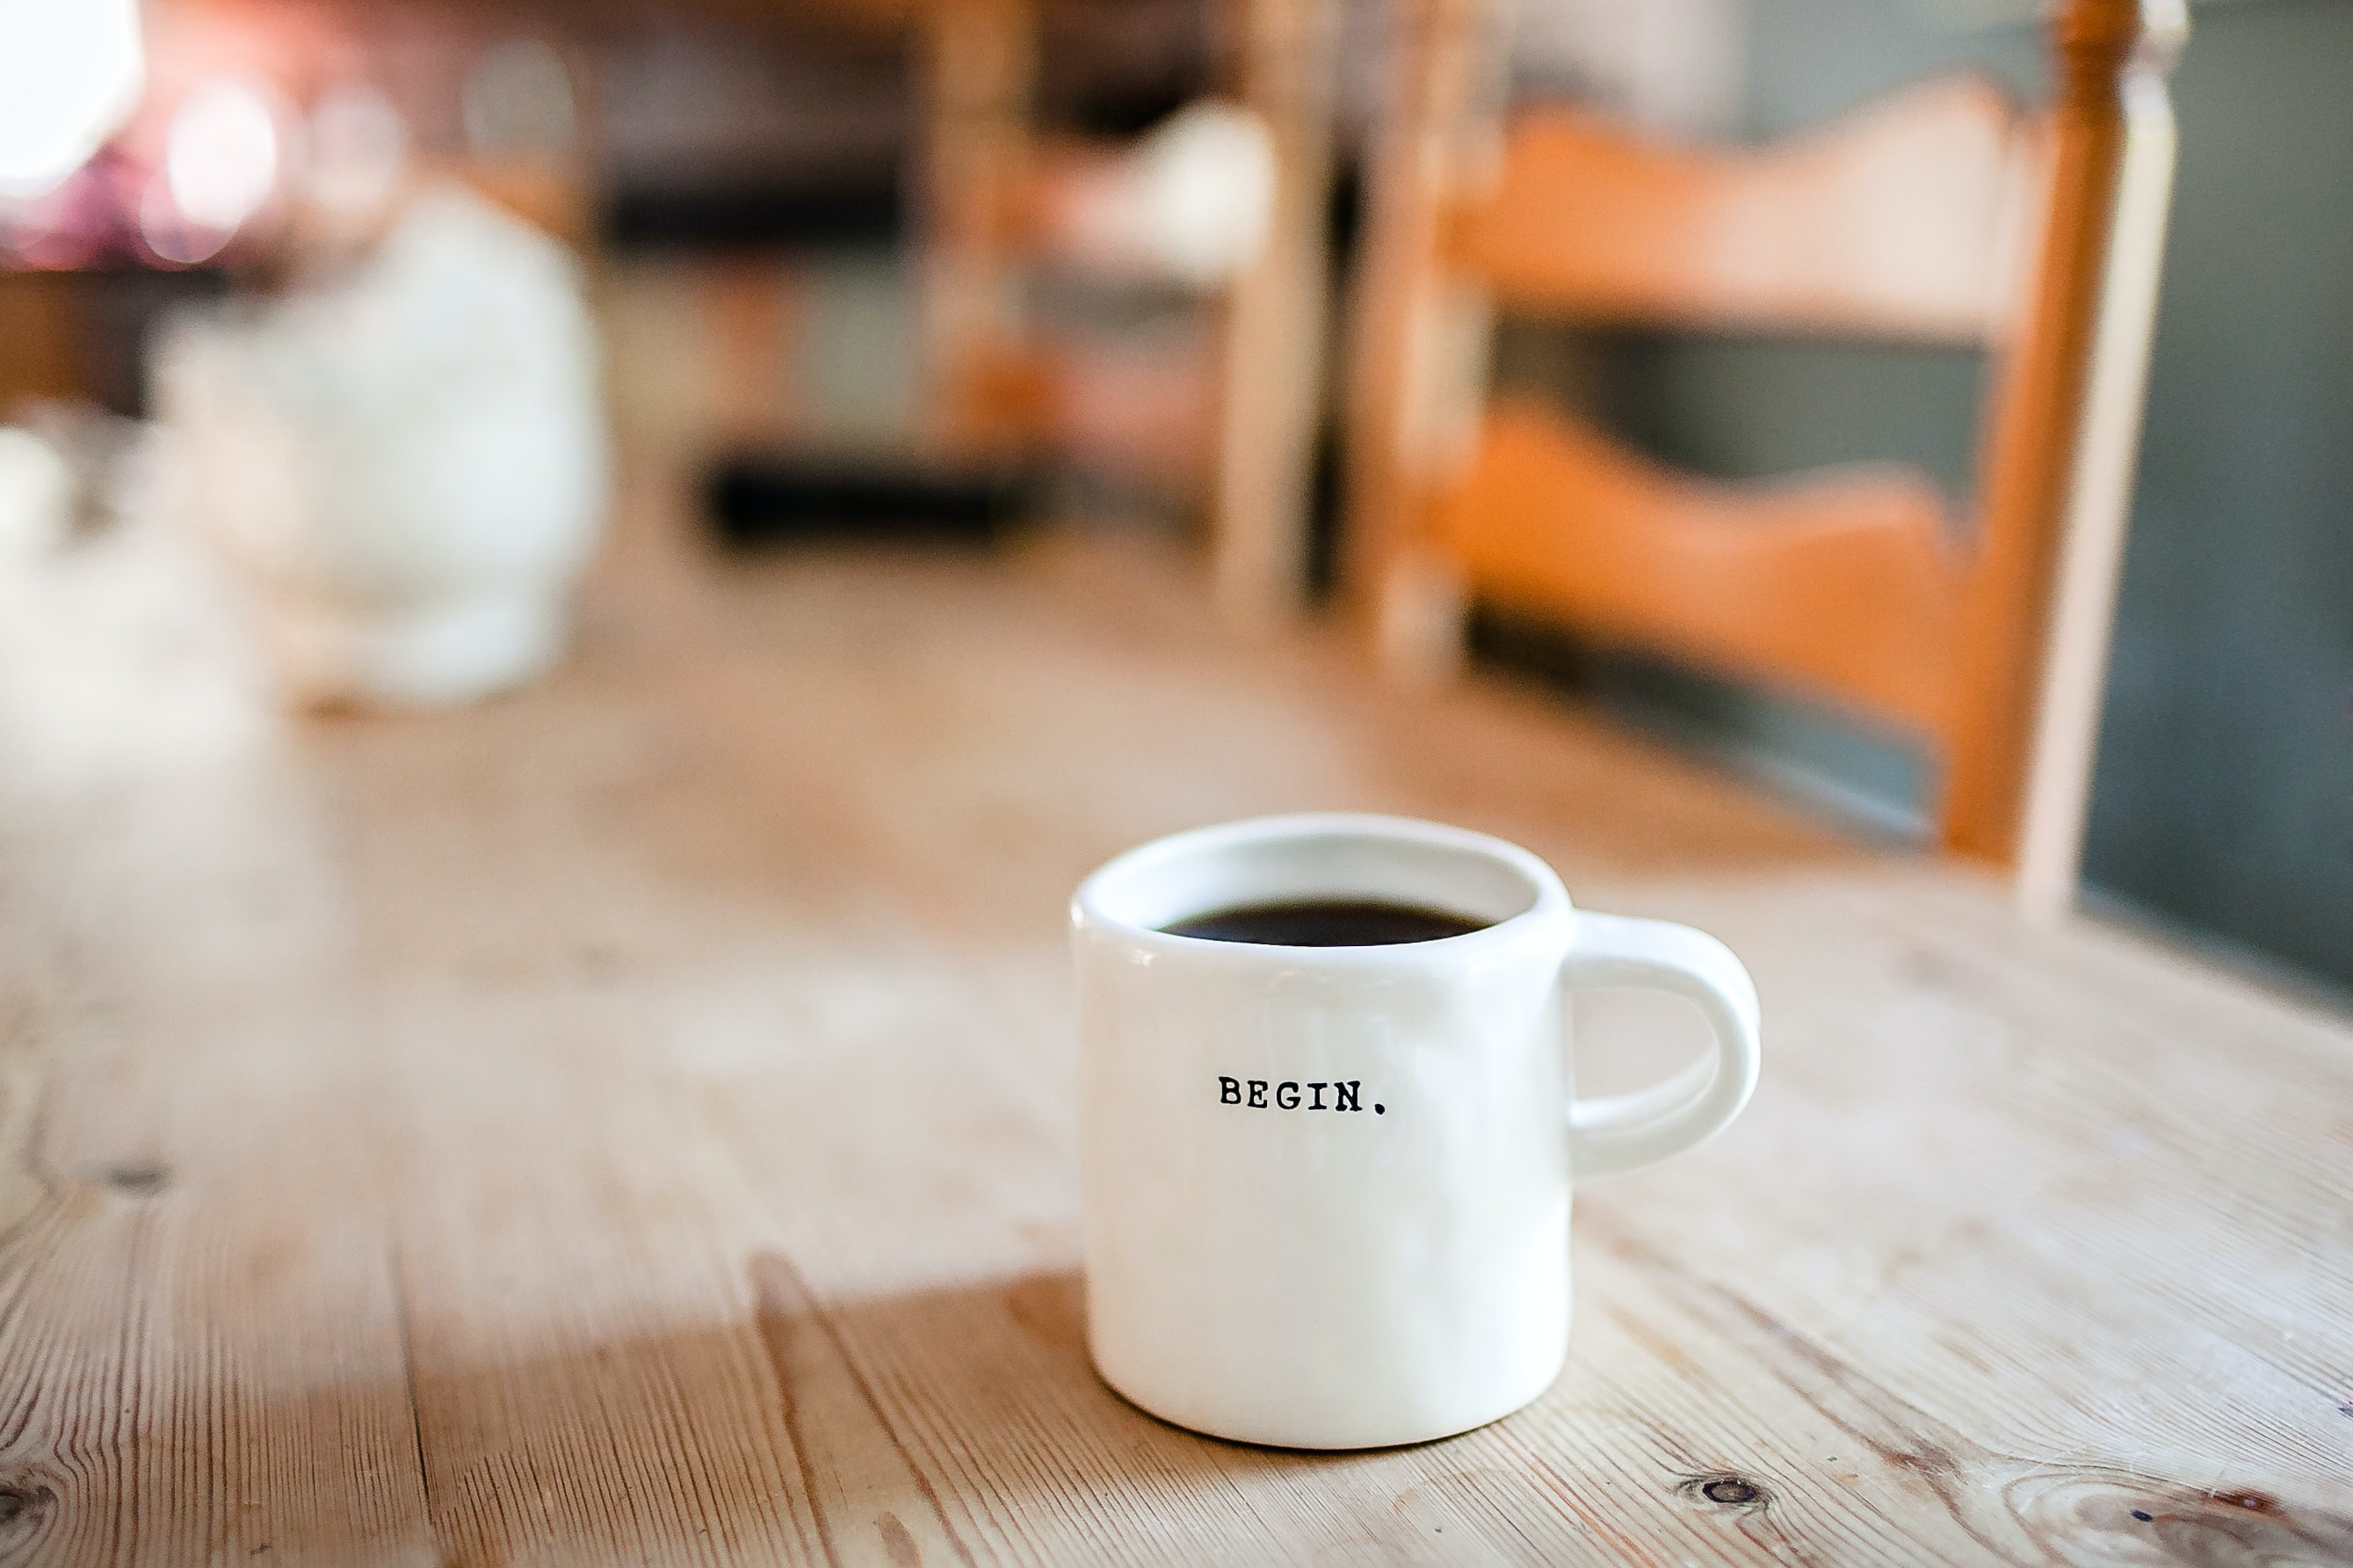 Una taza inscrita con la palabra “Comenzar”, llena de café sobre una mesa.